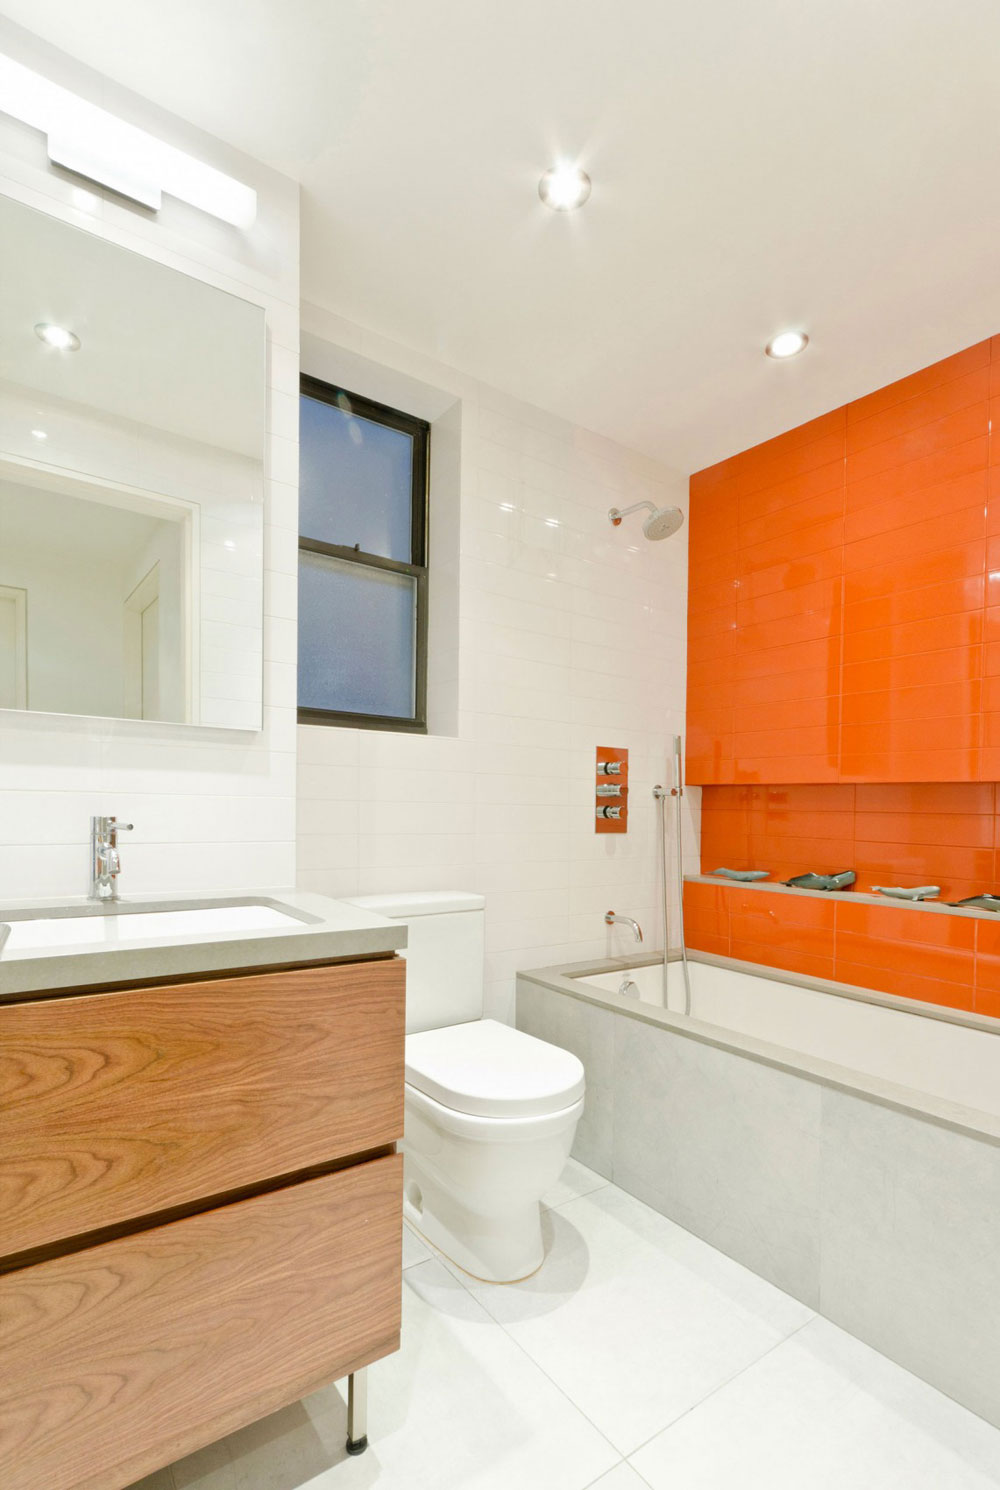 Letar du efter inspiration för modern badrumsinredning-13 Letar du efter inspiration för modern badrumsinredning?